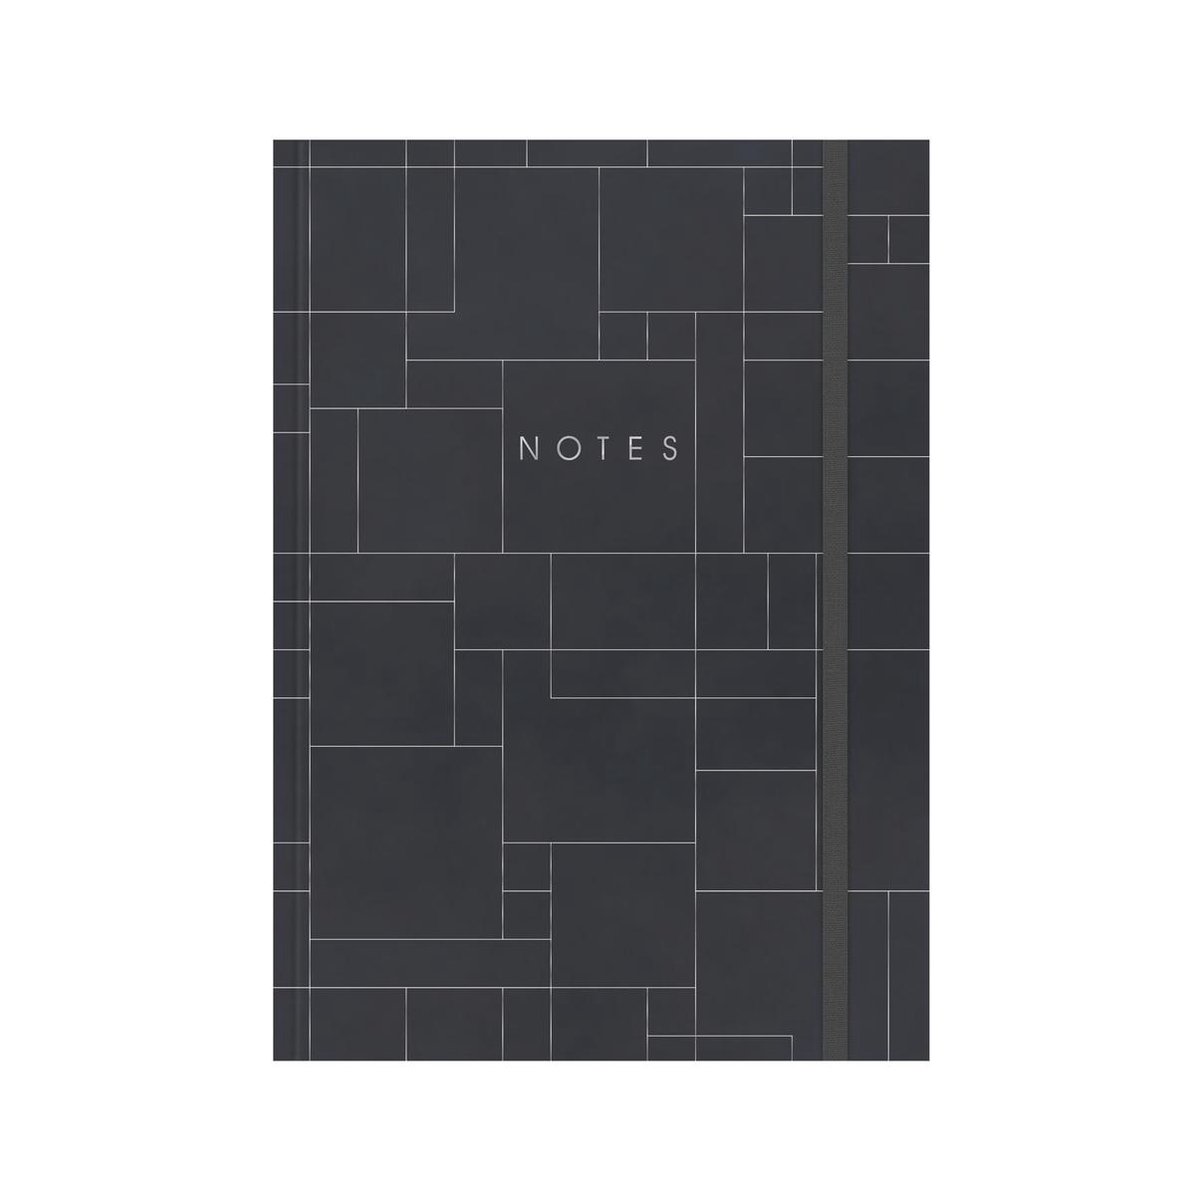 Hobbit - Notitieboek - Donkergrijs met zilverfolie vierkanten - Hardcover - A4 (21 x 29,7 cm)